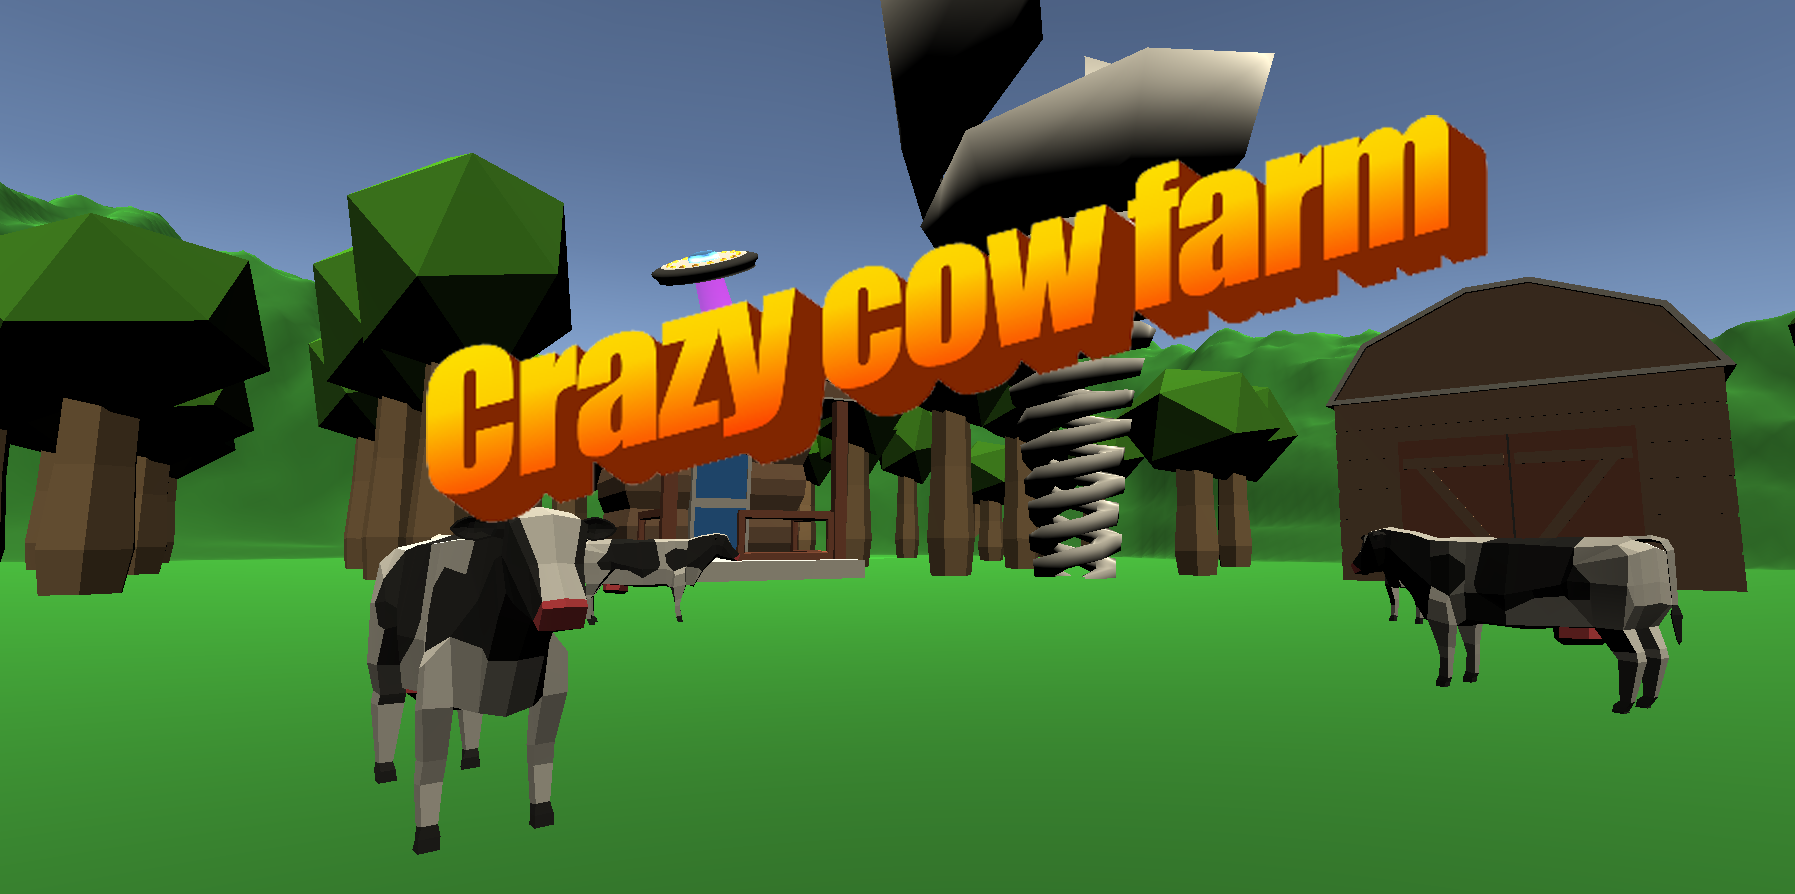 Crazy Cow Farm